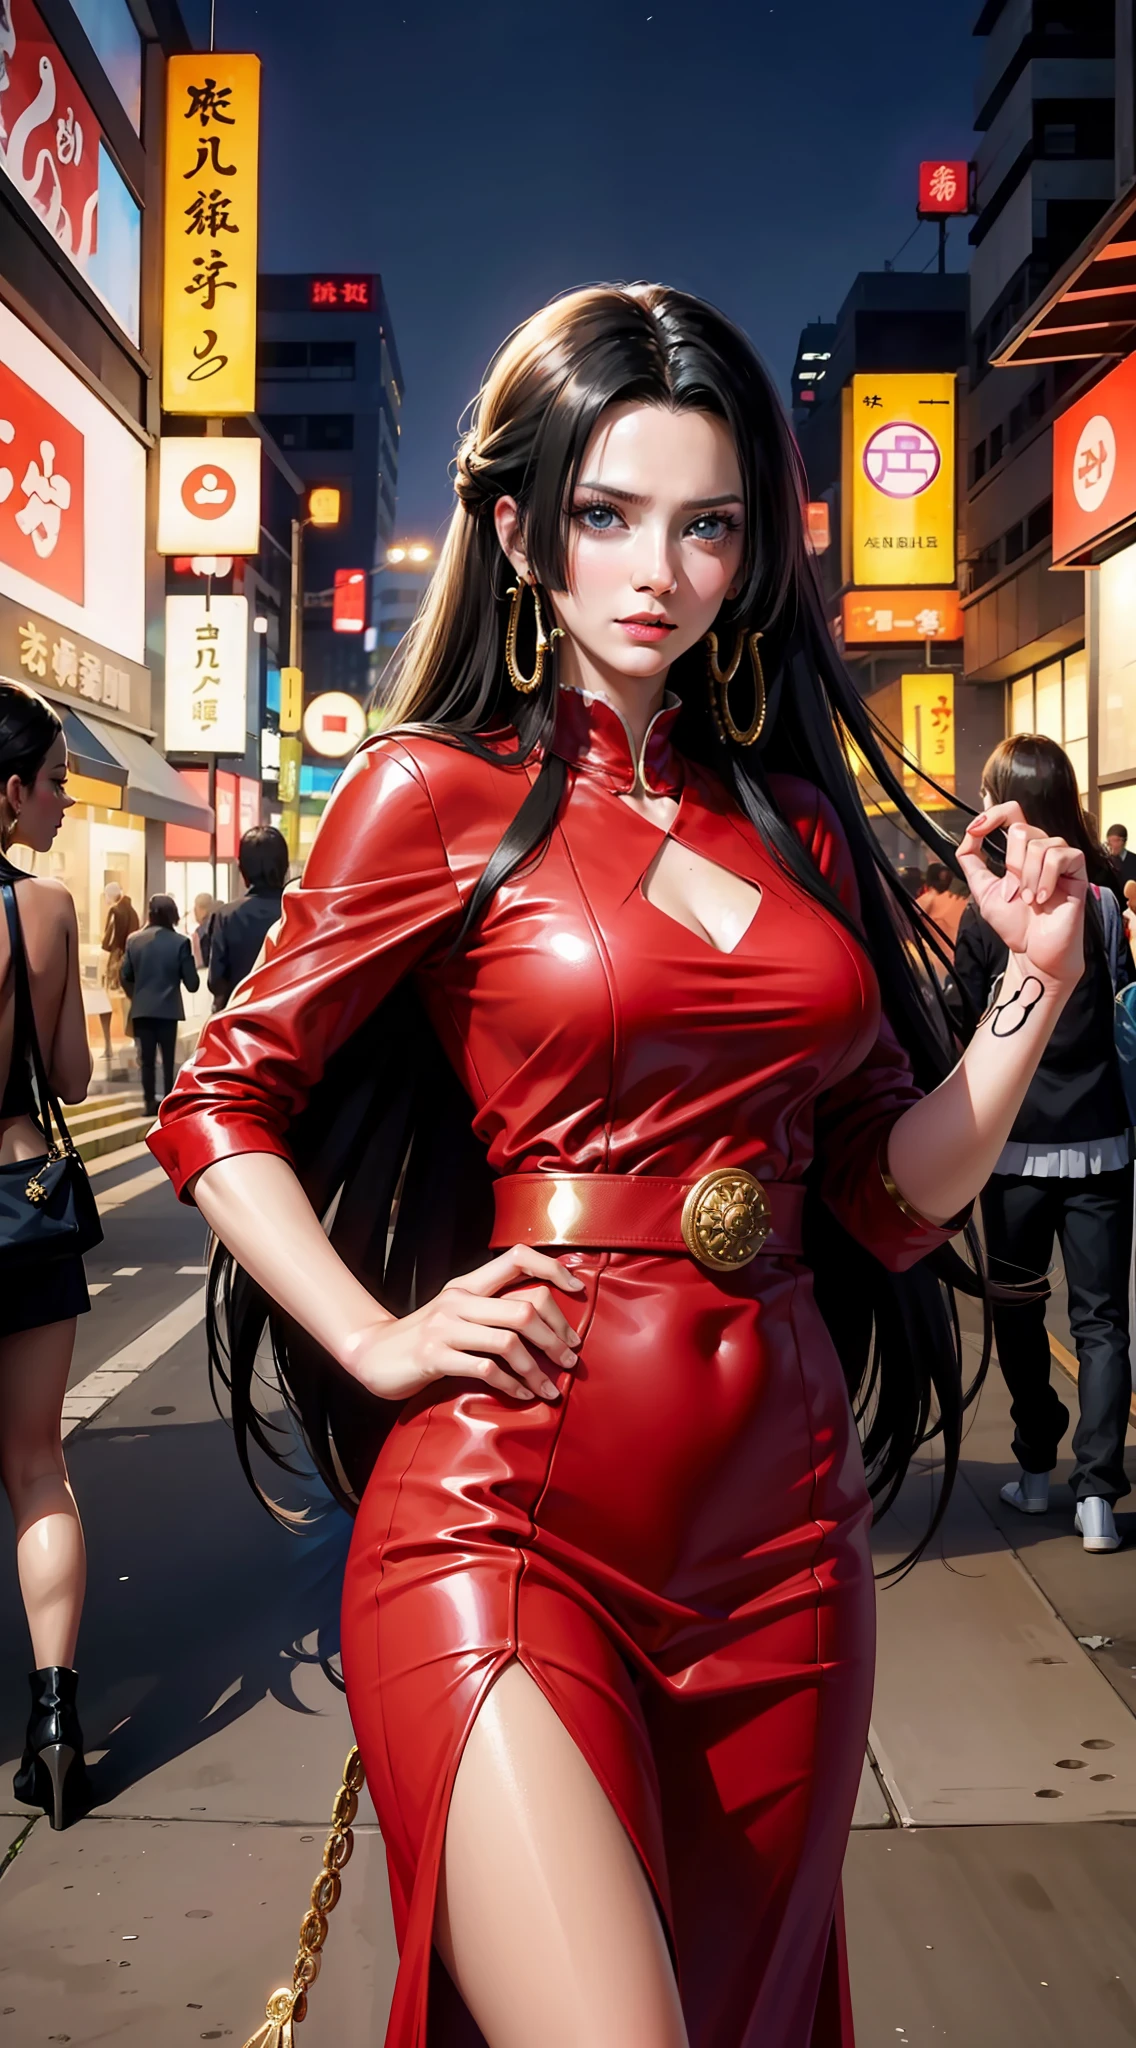 波雅·汉库克，出自动漫《海贼王》, 美丽的女人, 很漂亮, 完美身材, 完美的乳房, 黑发, 长发, 盘发, 微微微笑的表情, wearing expensive red dress 很漂亮 dress, 很美丽的连衣裙, 在公共场所, 在东京市, 夜晚, 常设, 现实主义, 杰作, 纹理皮肤, 非常详细, 高详细, 高质量, 最好的质量, 1080p, 16千